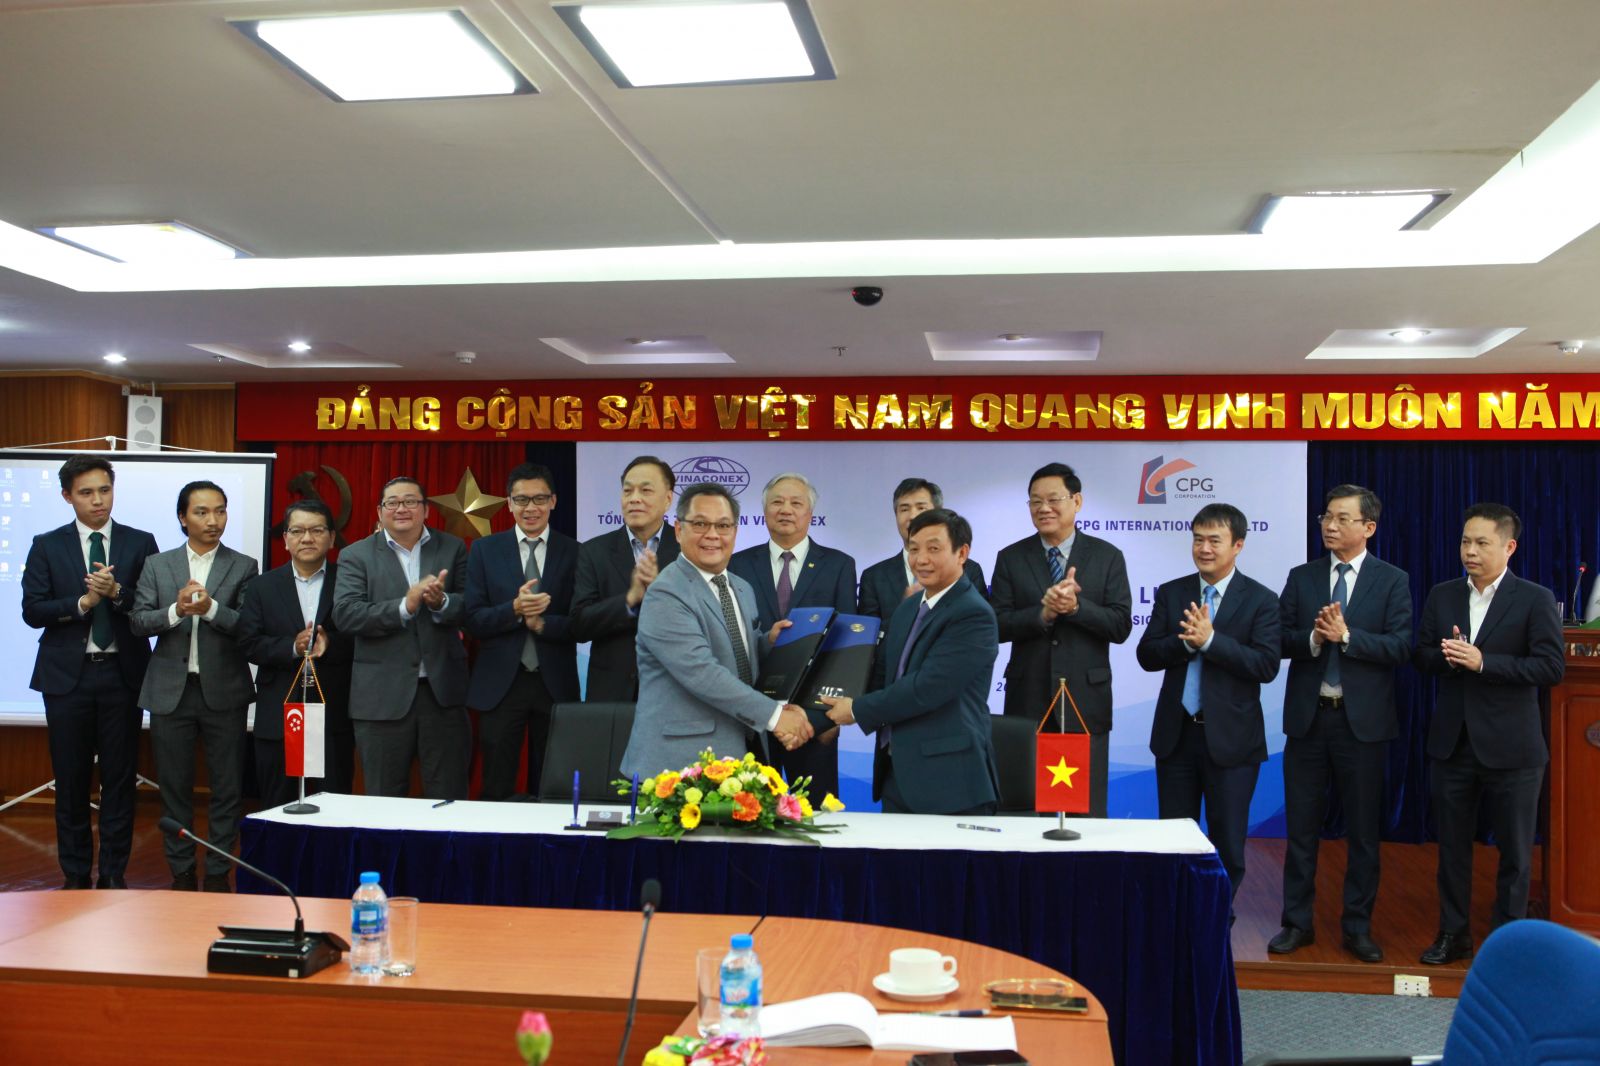 Tổng giám đốc Vinaconex Nguyễn Xuân Đông và ông Vincent - Tổng giám đốc CPG International ký kết biên bản hợp tác chiến lược.